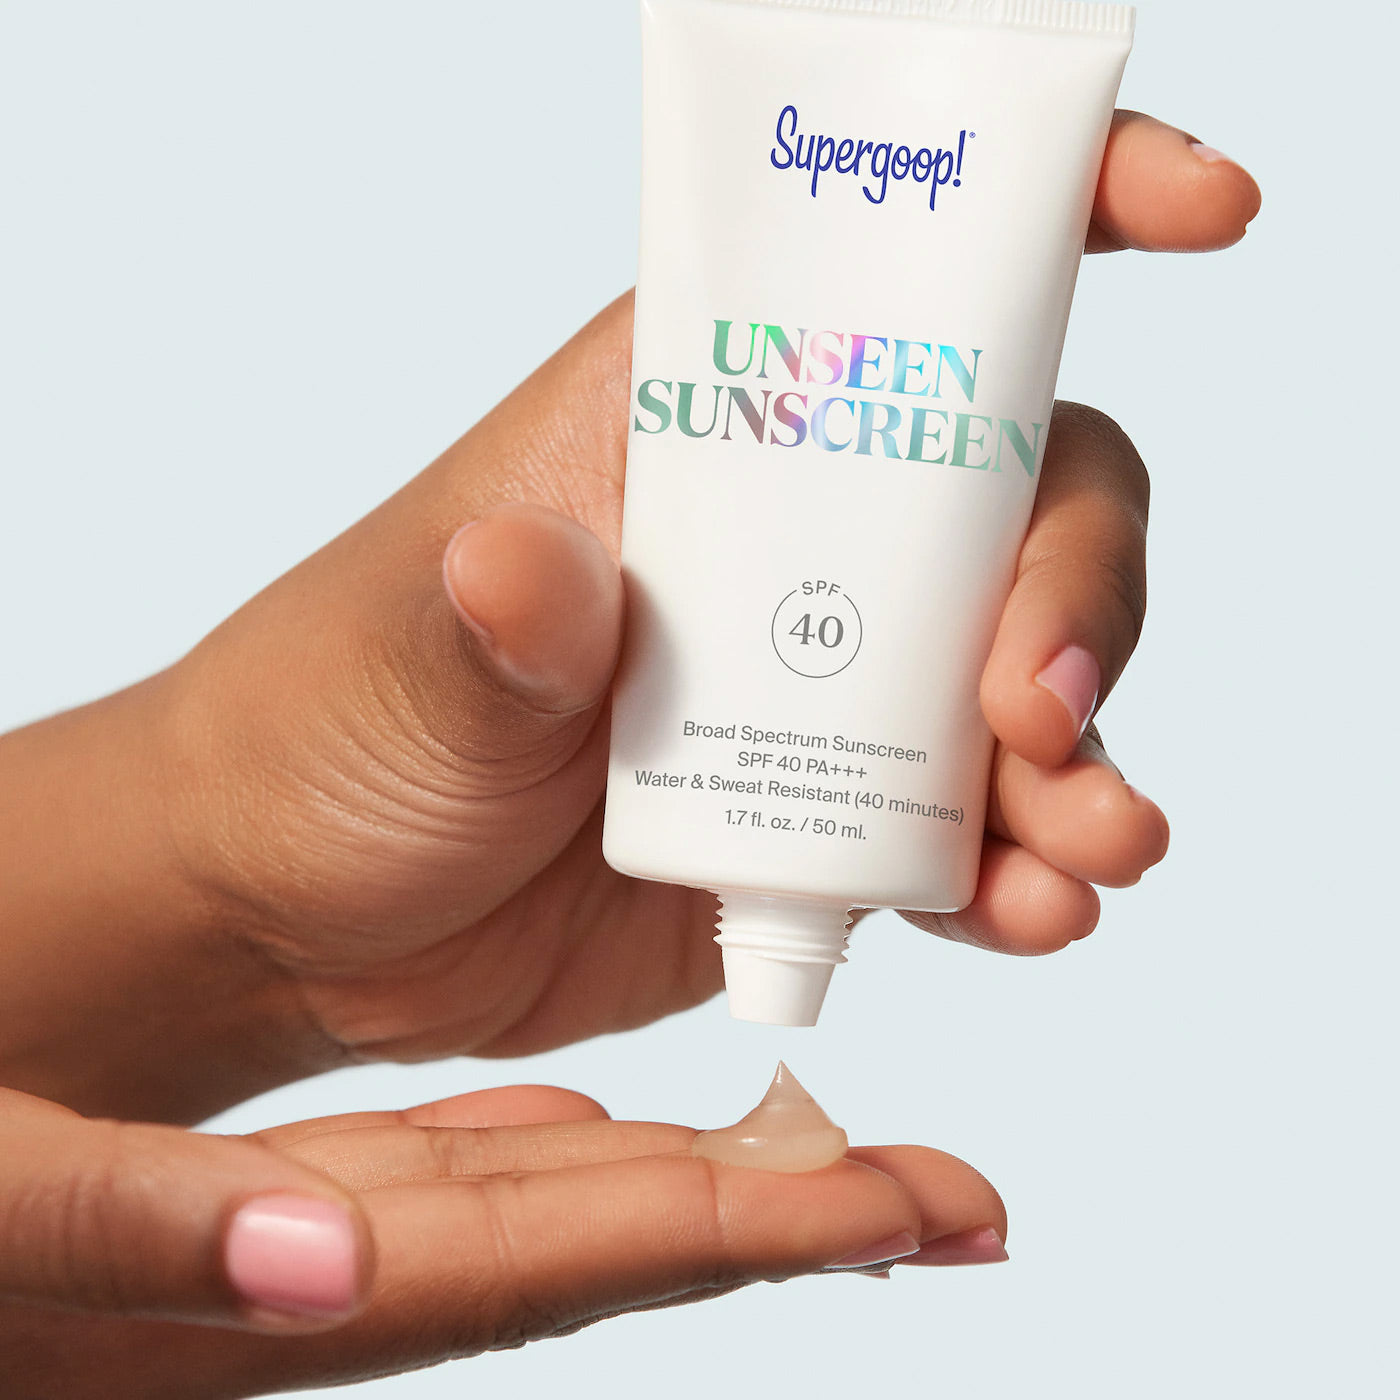 Supergoop! Unseen Sunscreen SPF 40 PA+++ 30 ml